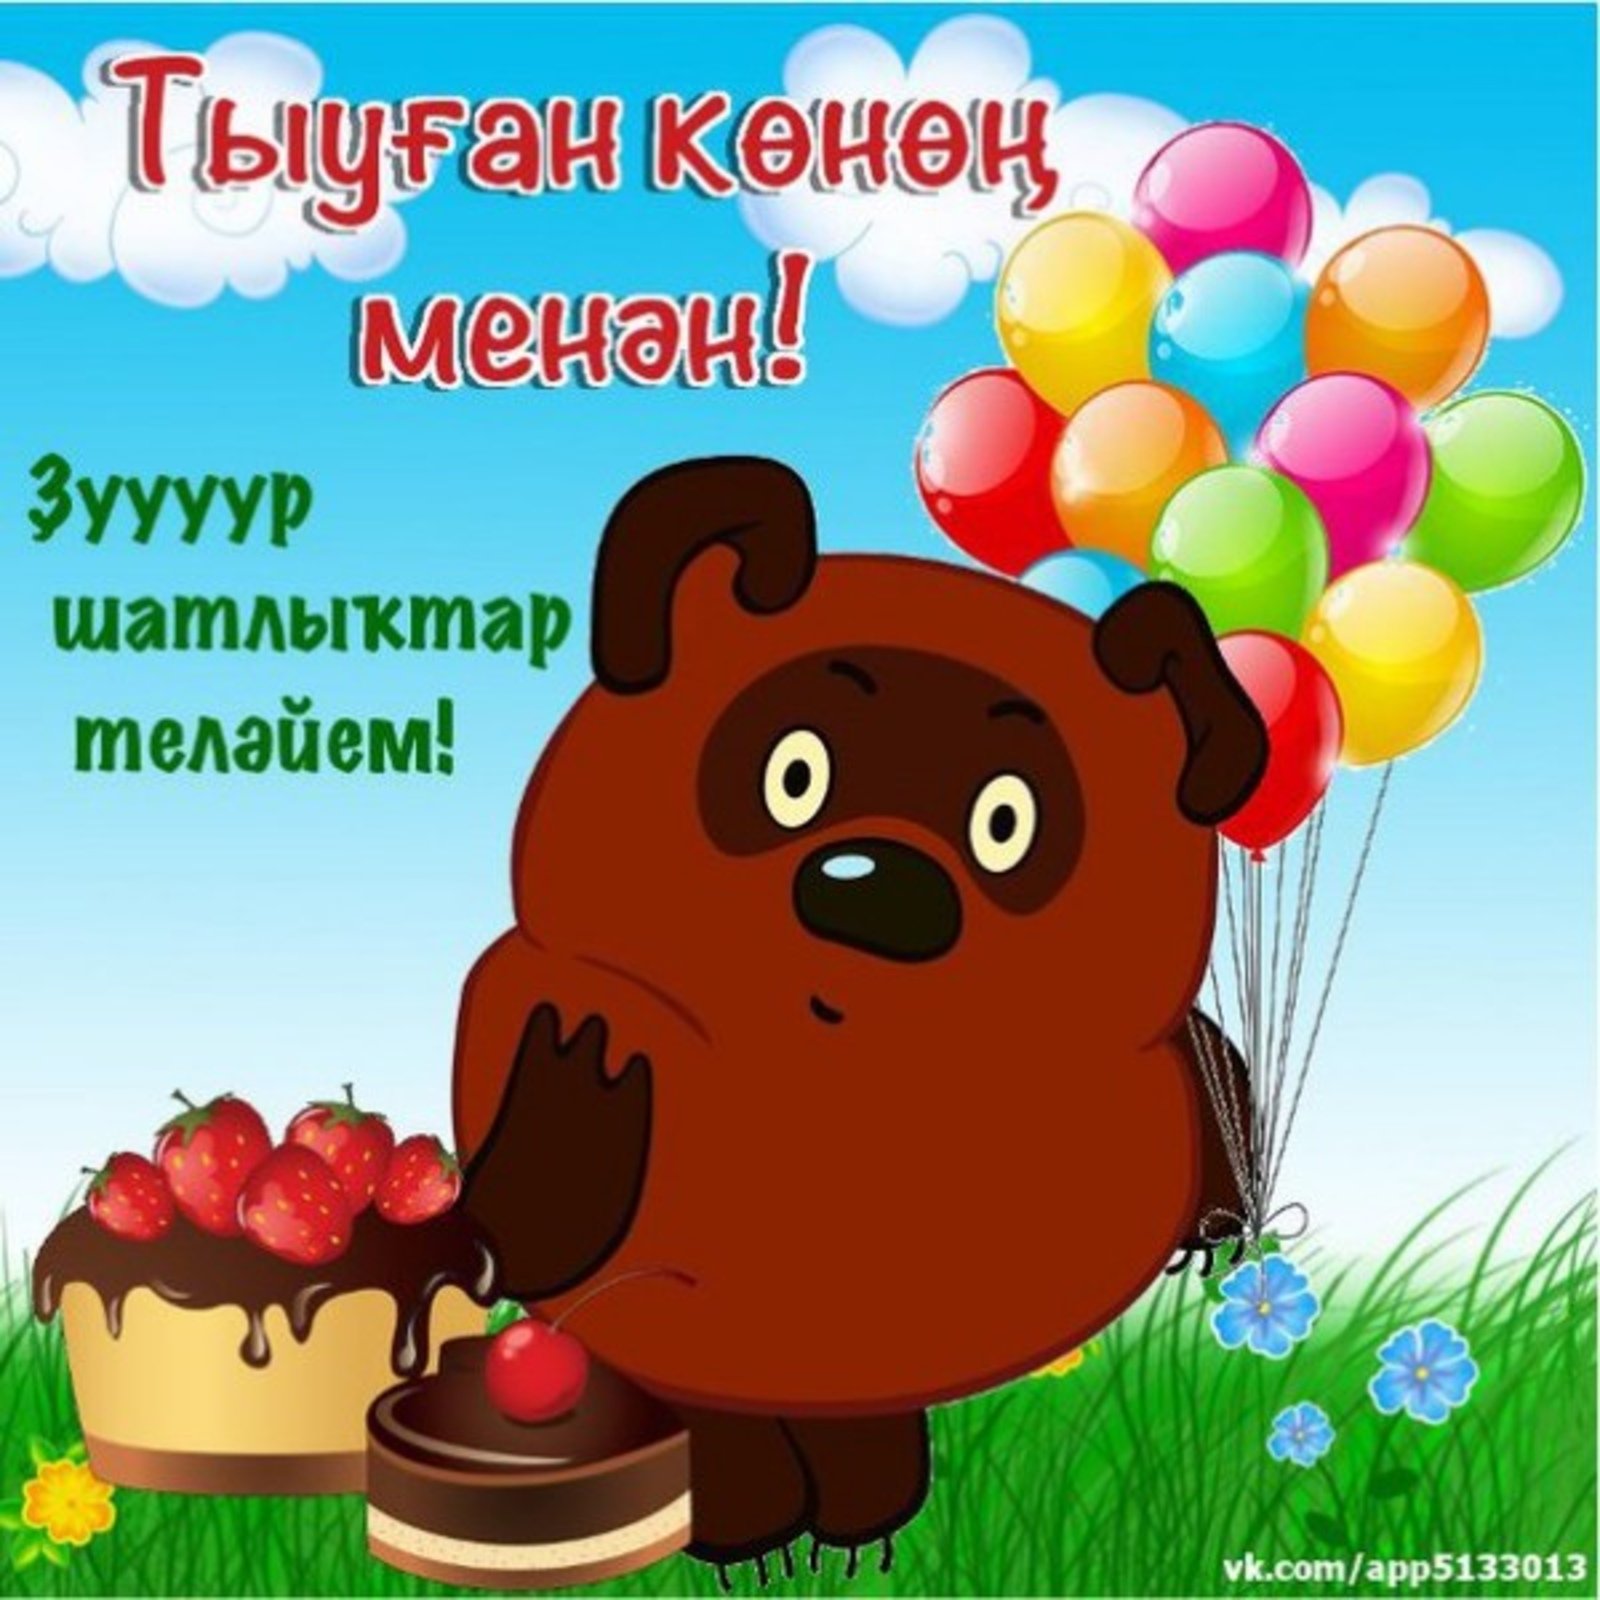 Башкирский поздравление с днем. Поздравления с днём рождения на башкирском языке. Пожелания с днём рождения на башкирском. Поздравления с днём рождения мужчине на башкирском языке. Поздравления на башкирском языке на юбилей.